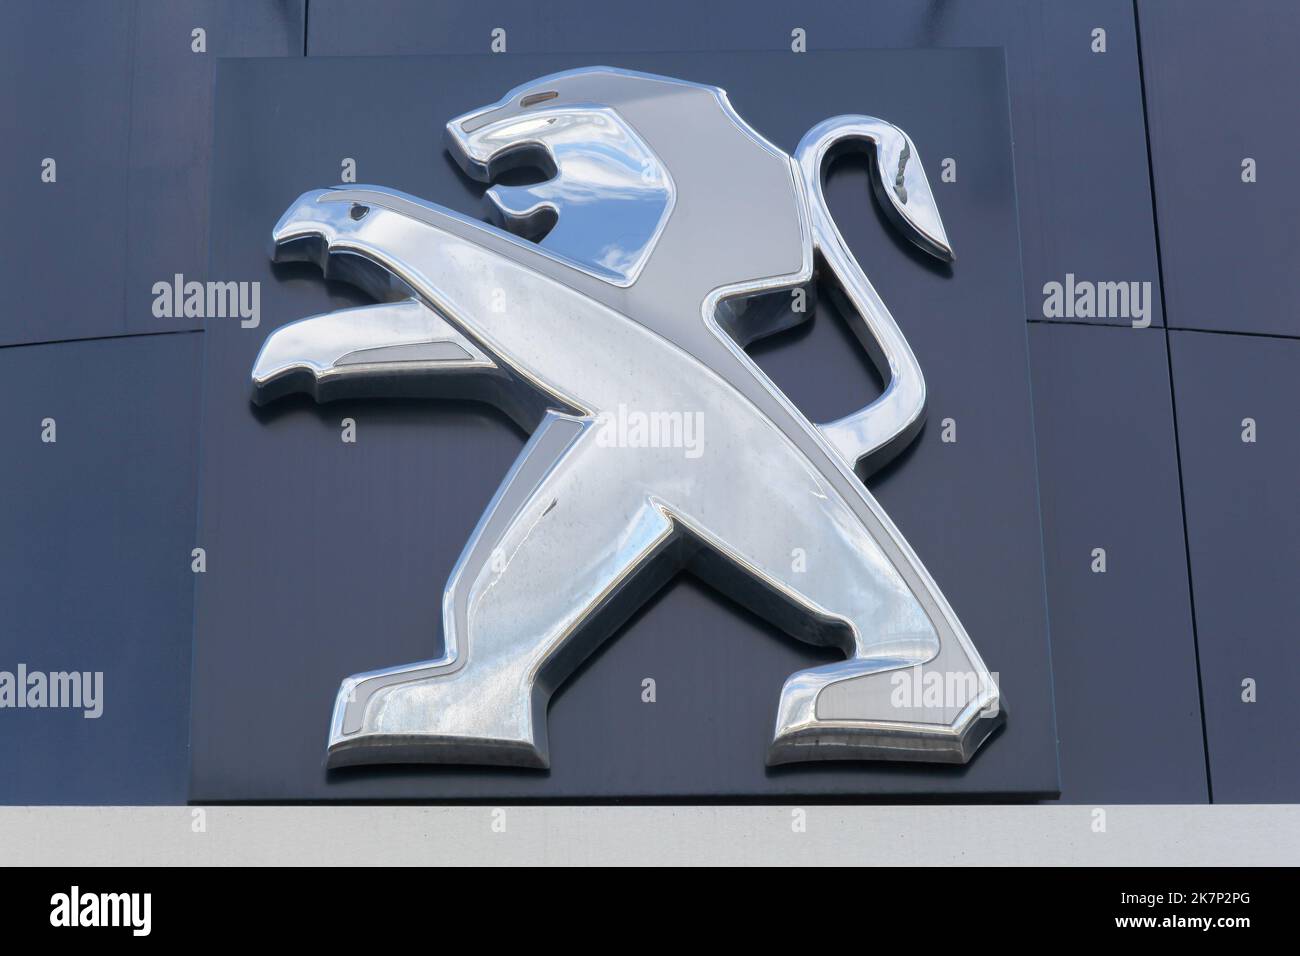 Villefranche, Frankreich - 5. März 2017: Peugeot-Logo an einer Wand. Peugeot ist eine französische Automarke, die zum automobilkonzern peugeot Honda gehört Stockfoto